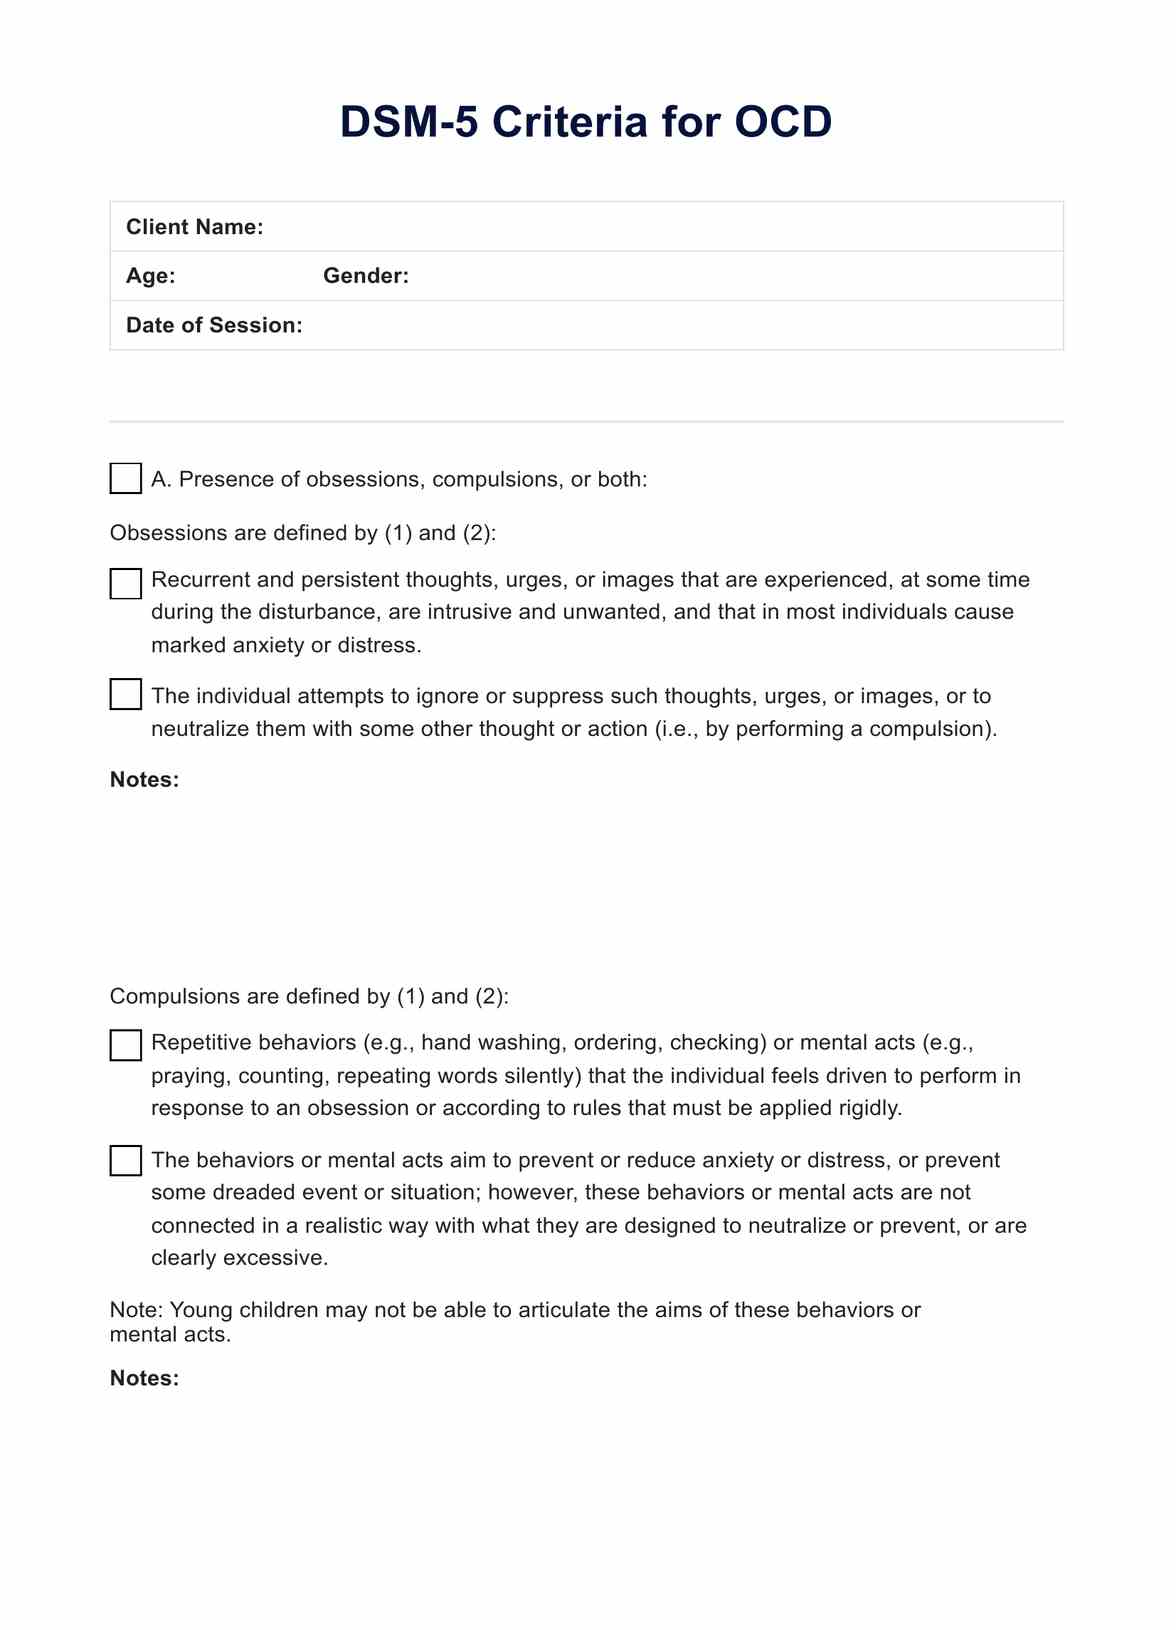 DSM 5 Criteria for OCD PDF Example